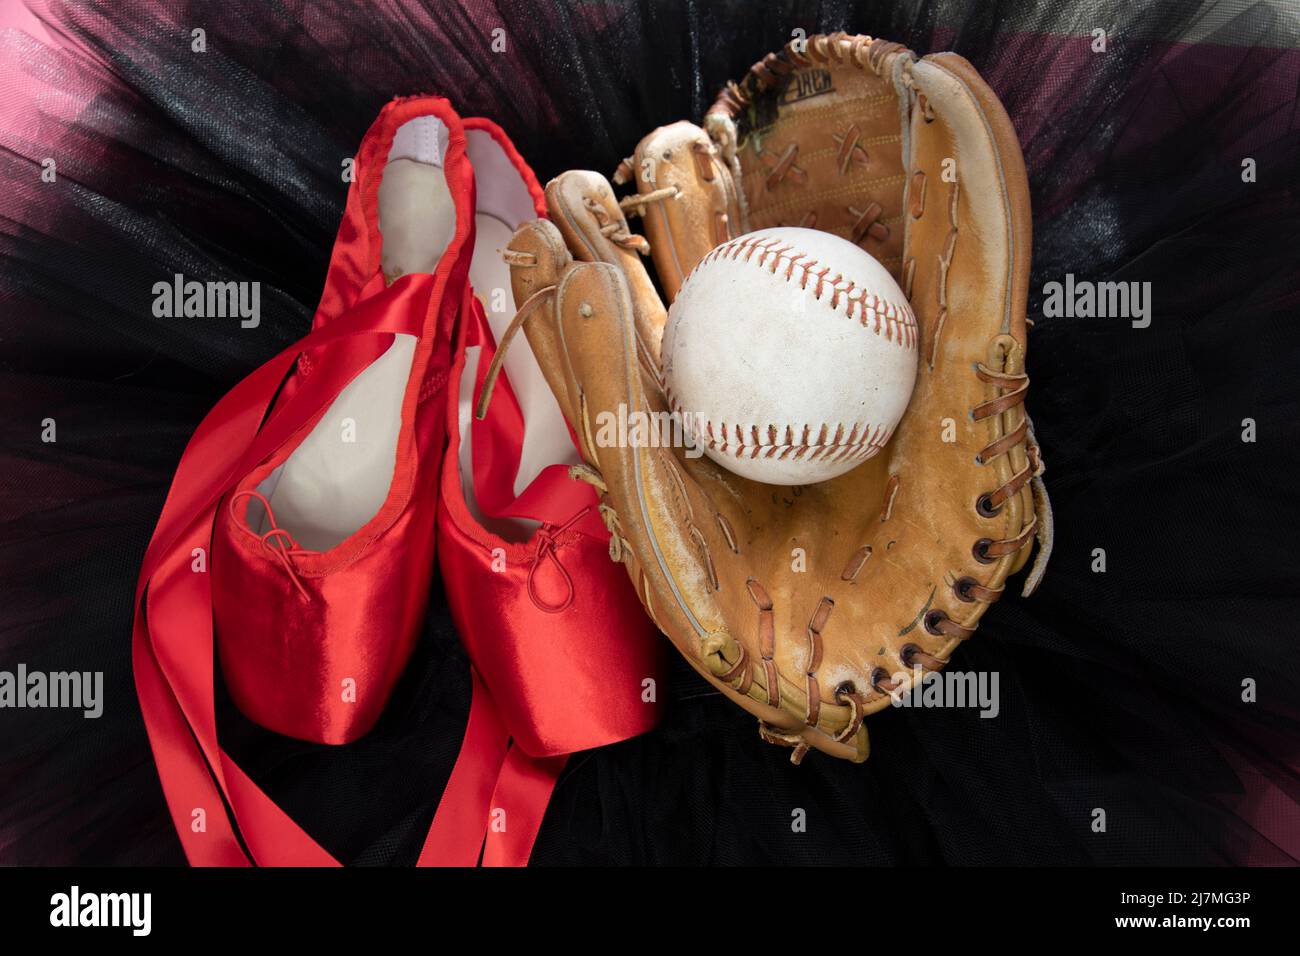 Softball-Handschuh, Ball- und Ballettschuhe auf einem schwarzen Tutu. Stockfoto